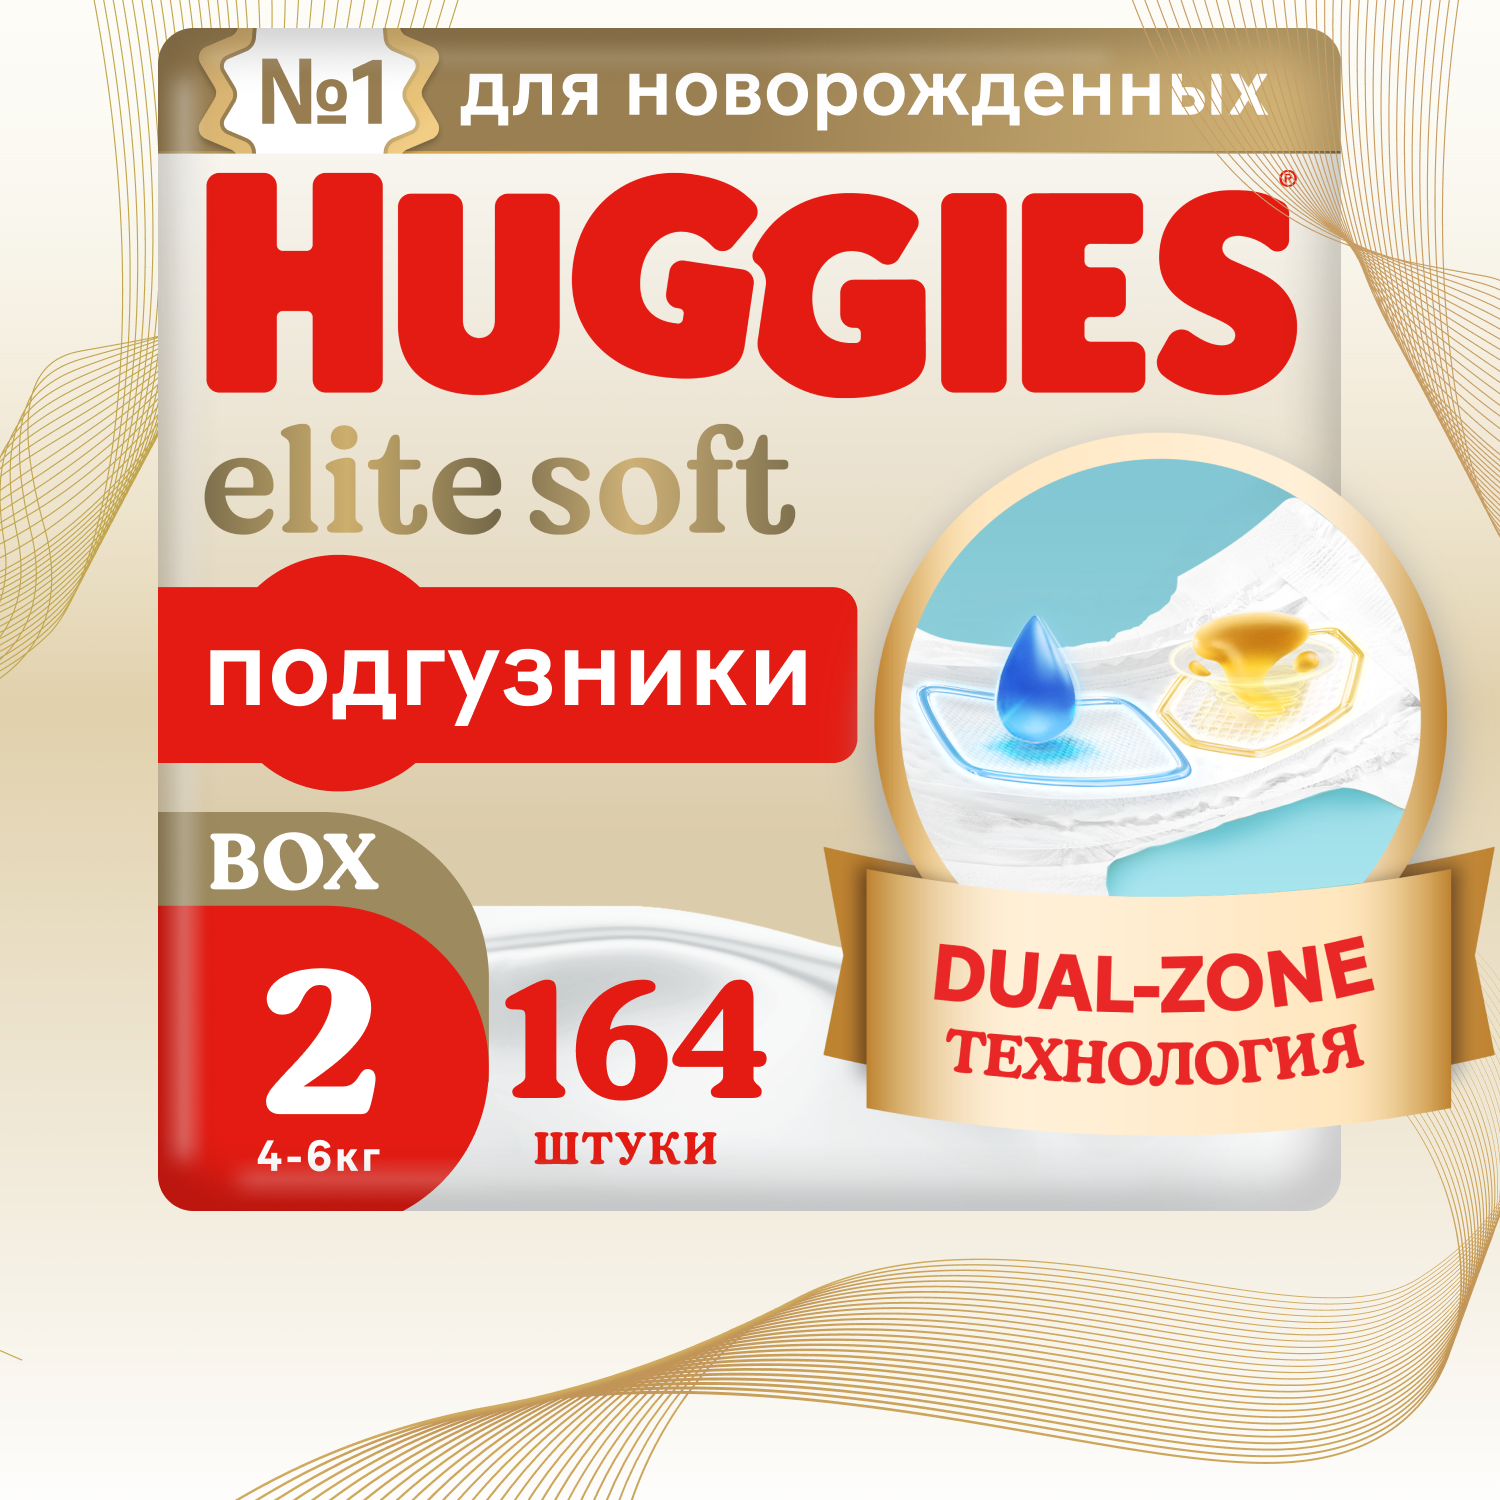 Подгузники Huggies Elite Soft для новорожденных 4-6кг, 2 размер, 164шт